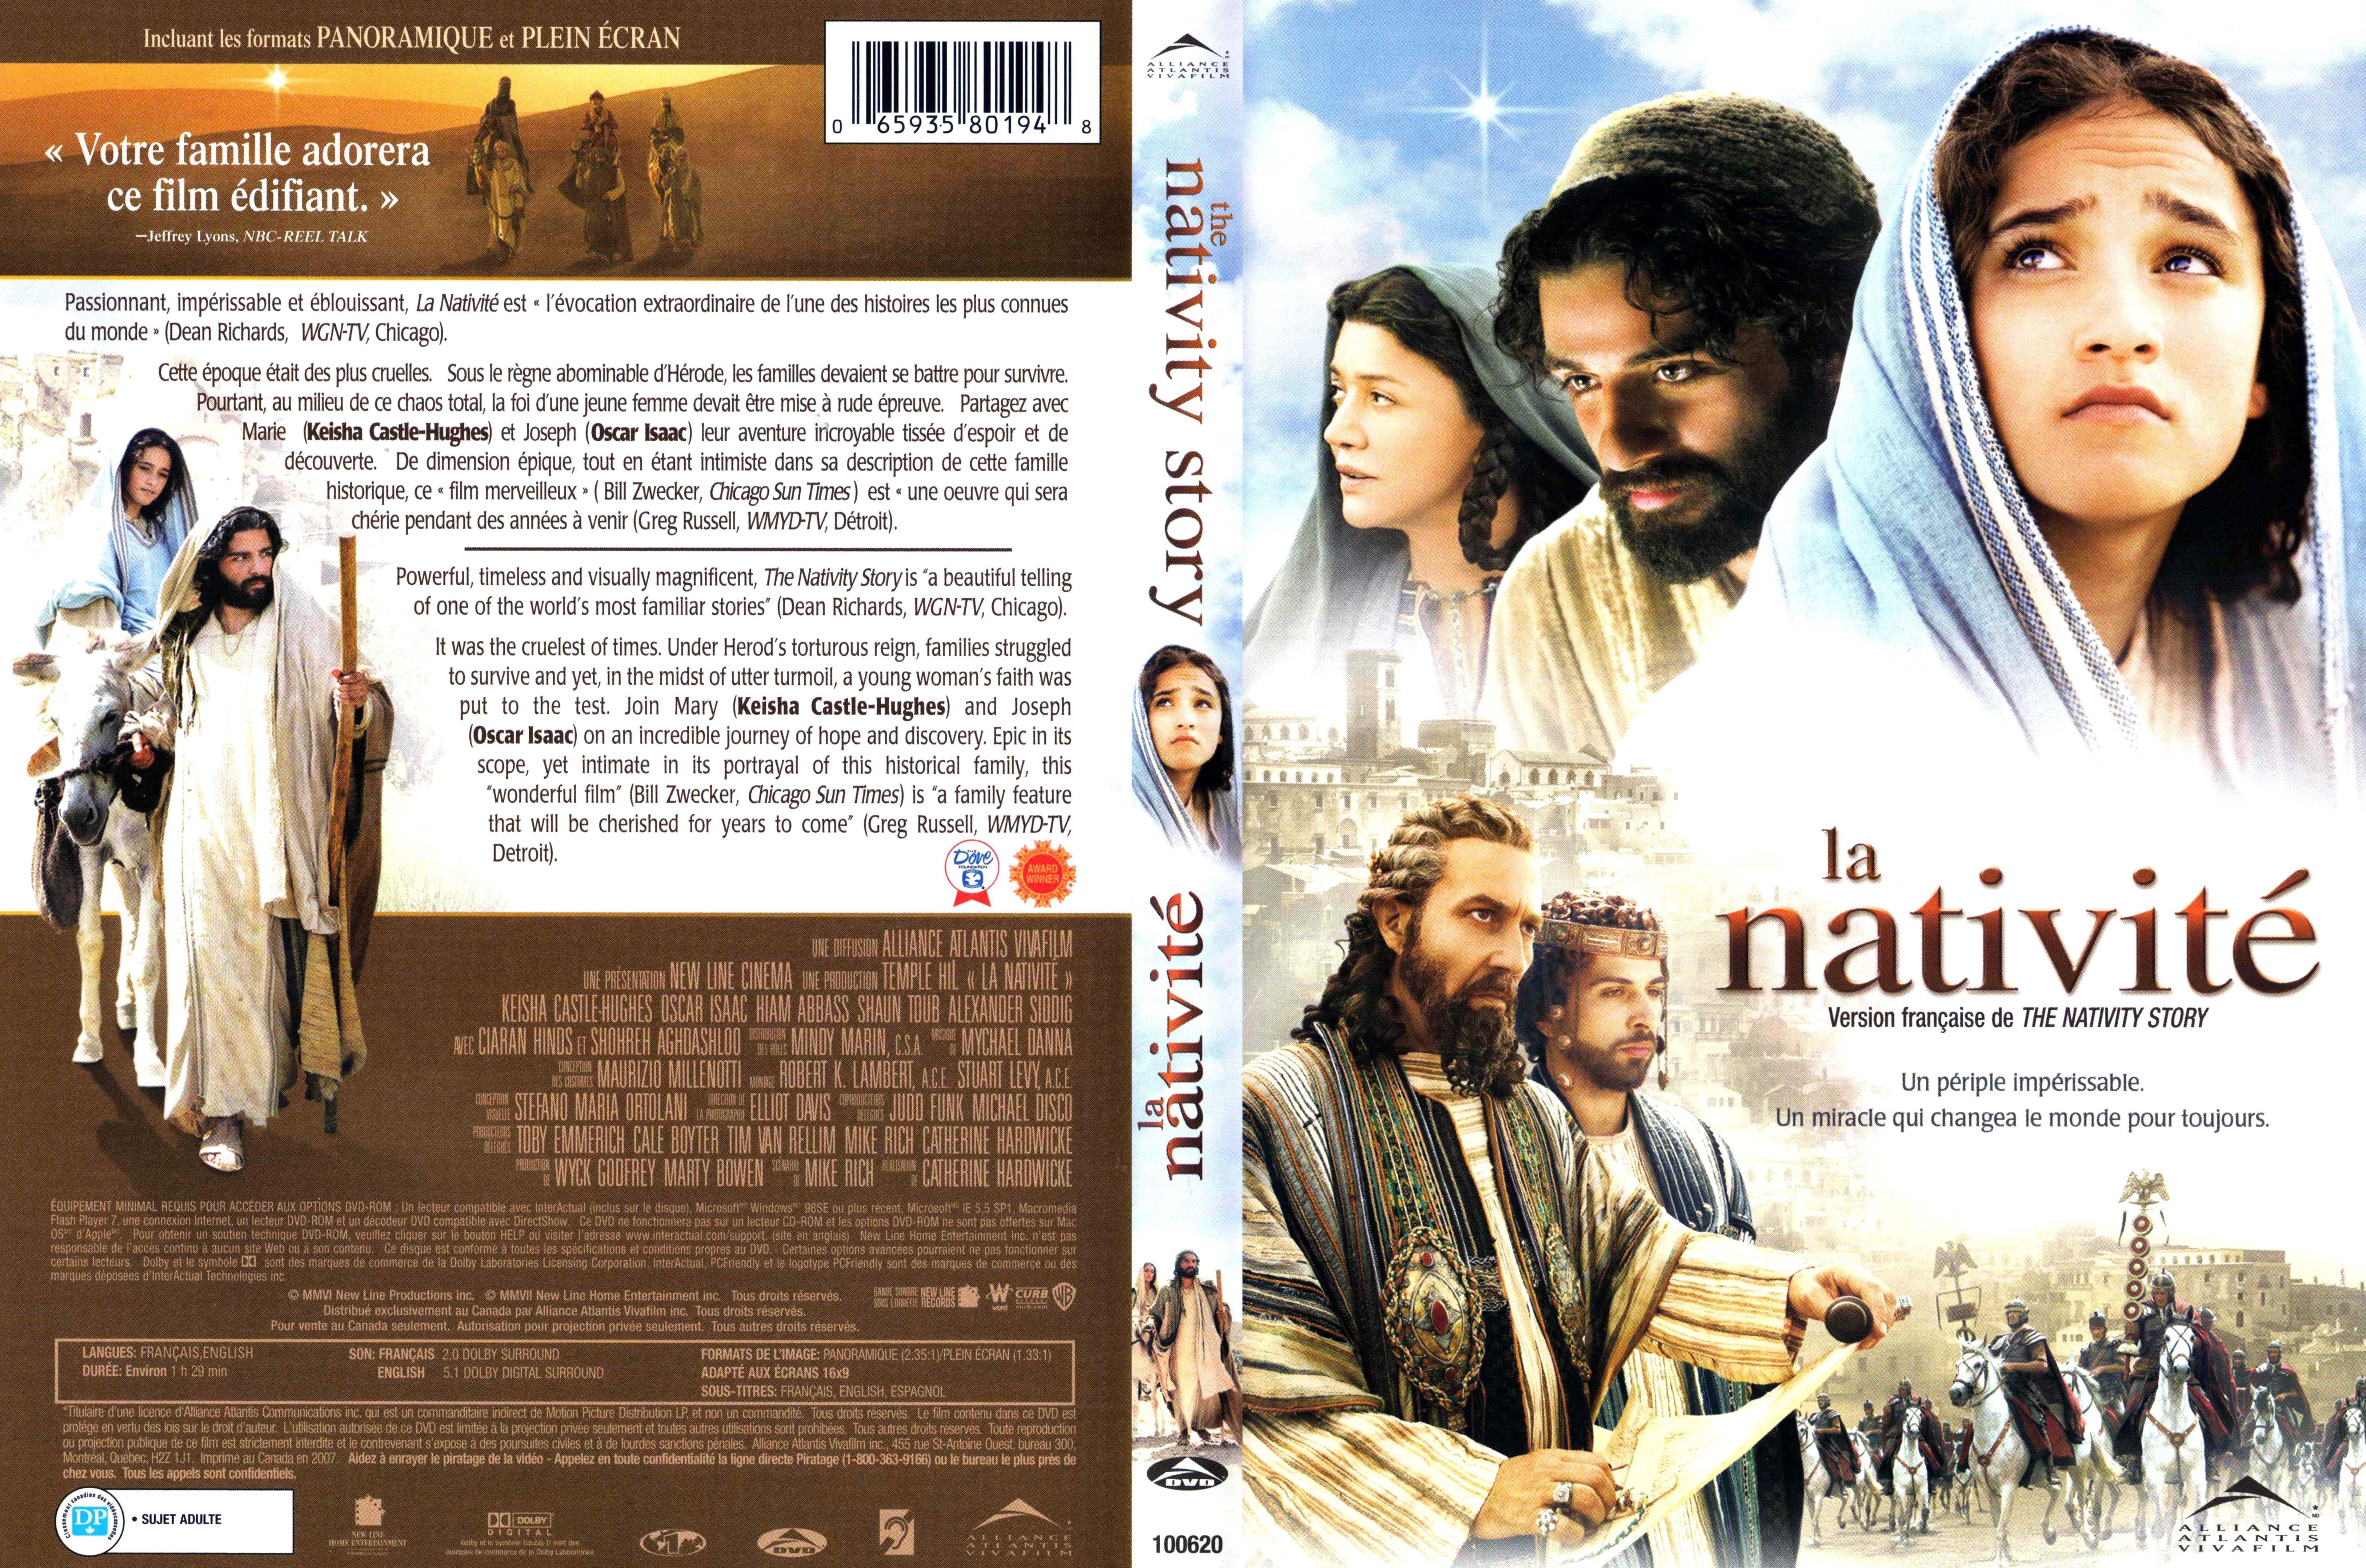 Jaquette DVD La nativit Zone 1